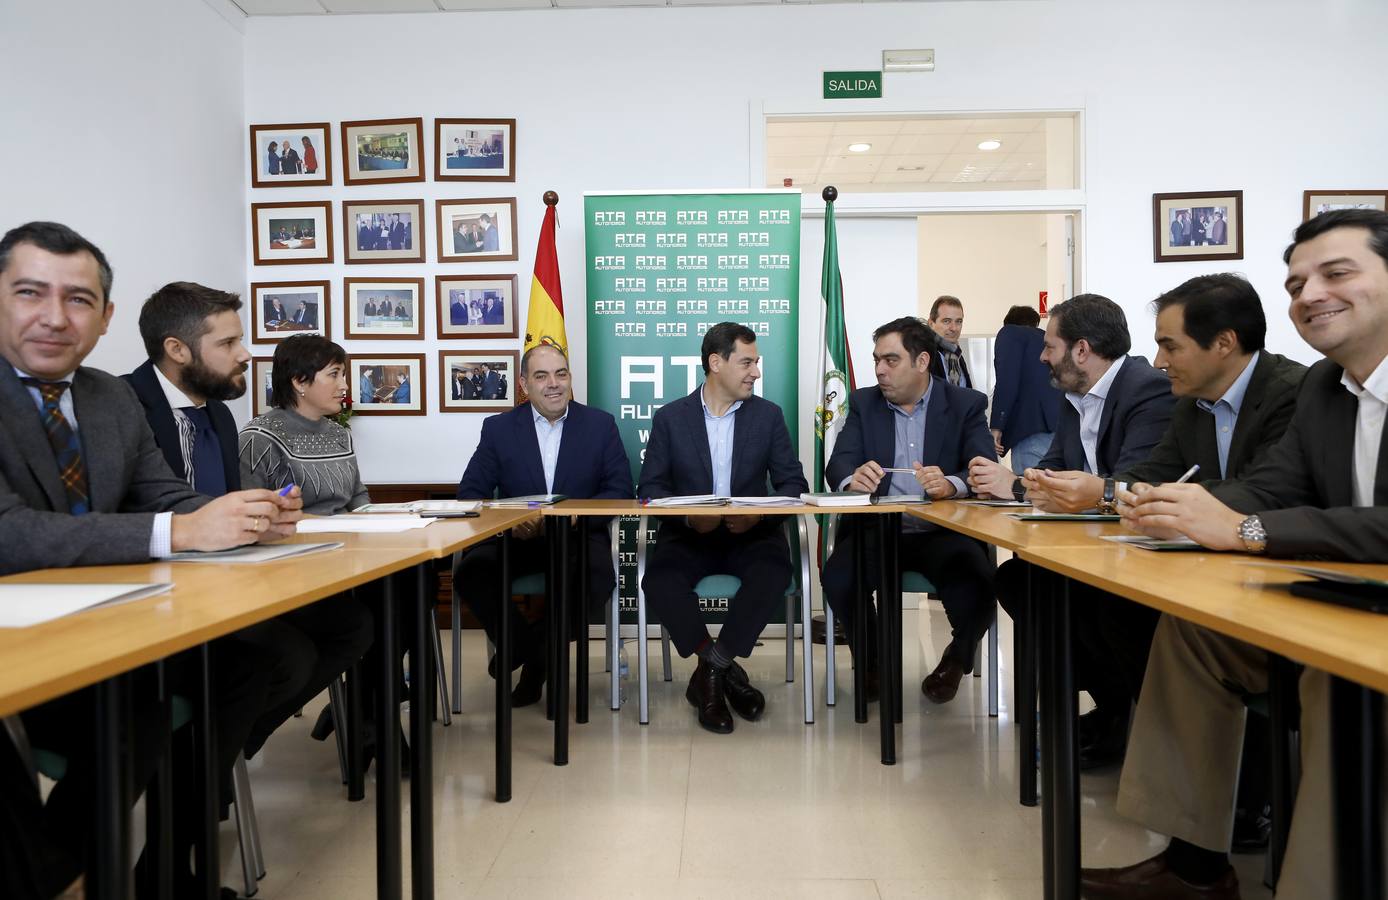 La reunión de Juanma Moreno con ATA en Córdoba, en imágenes